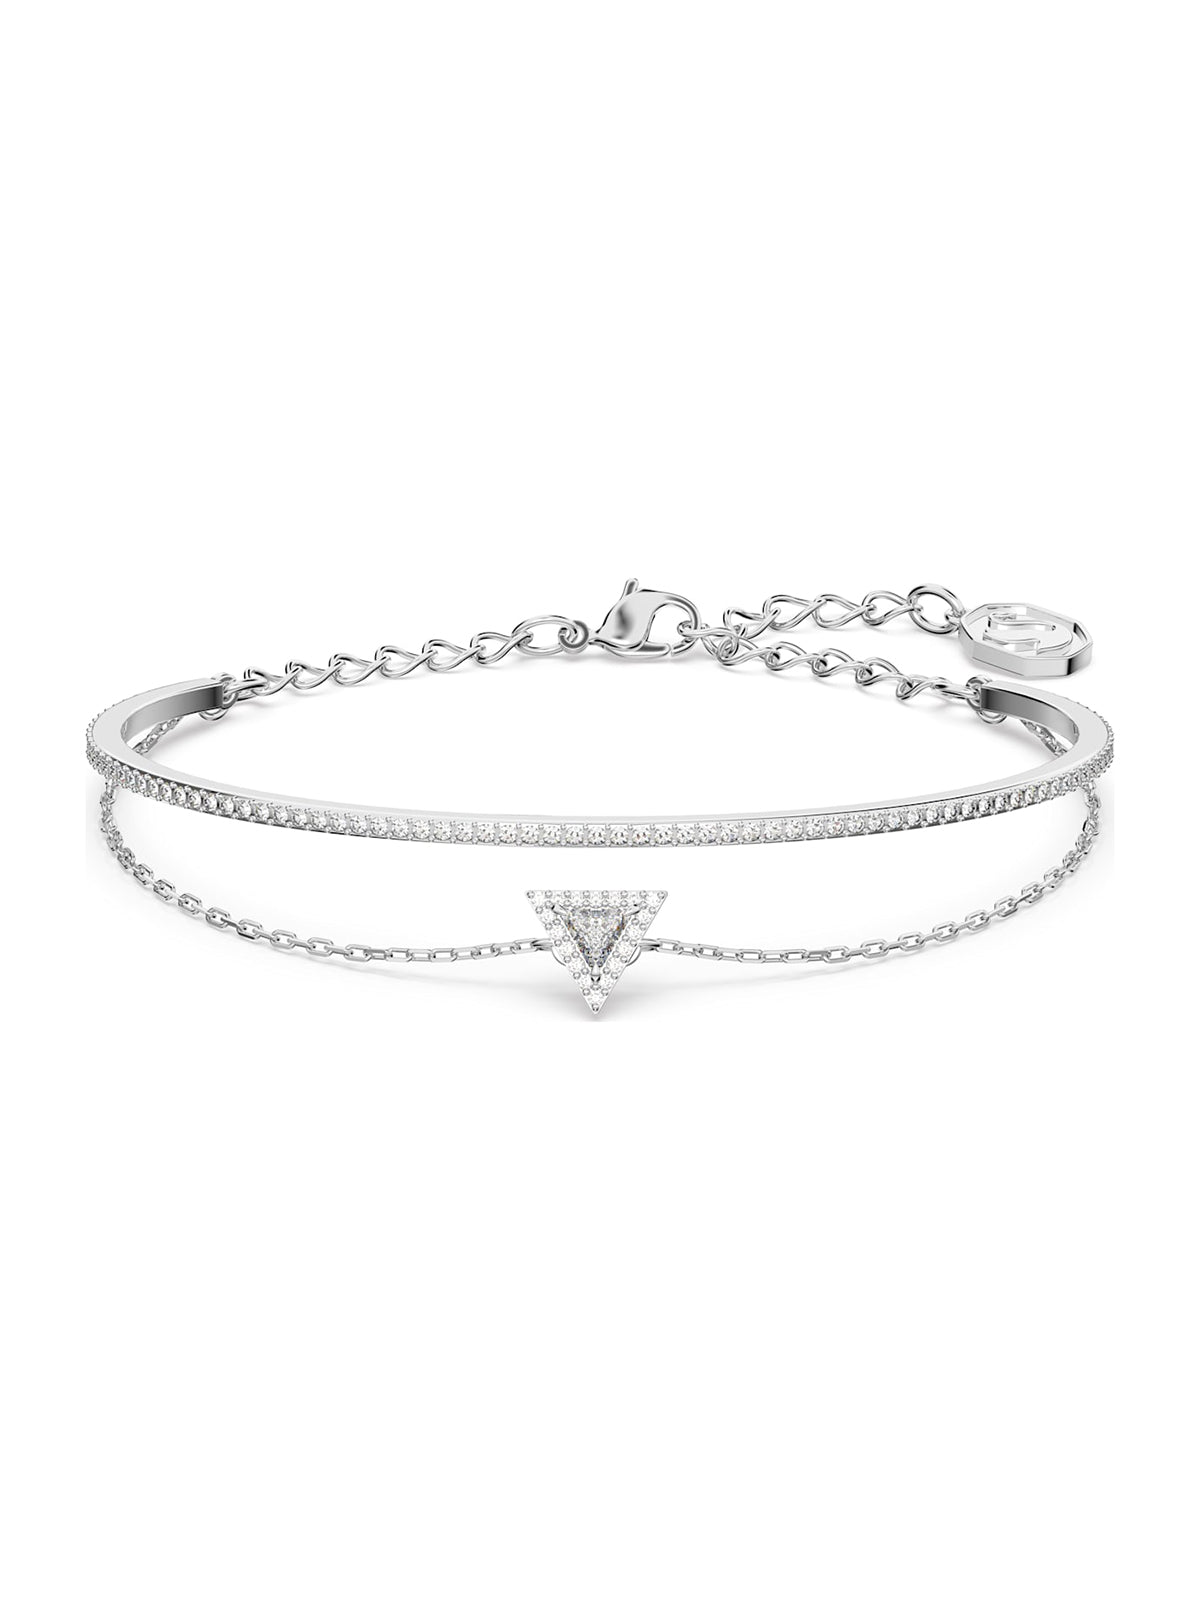 Swarovski Ortyx White Crystal Bracelet 5643732